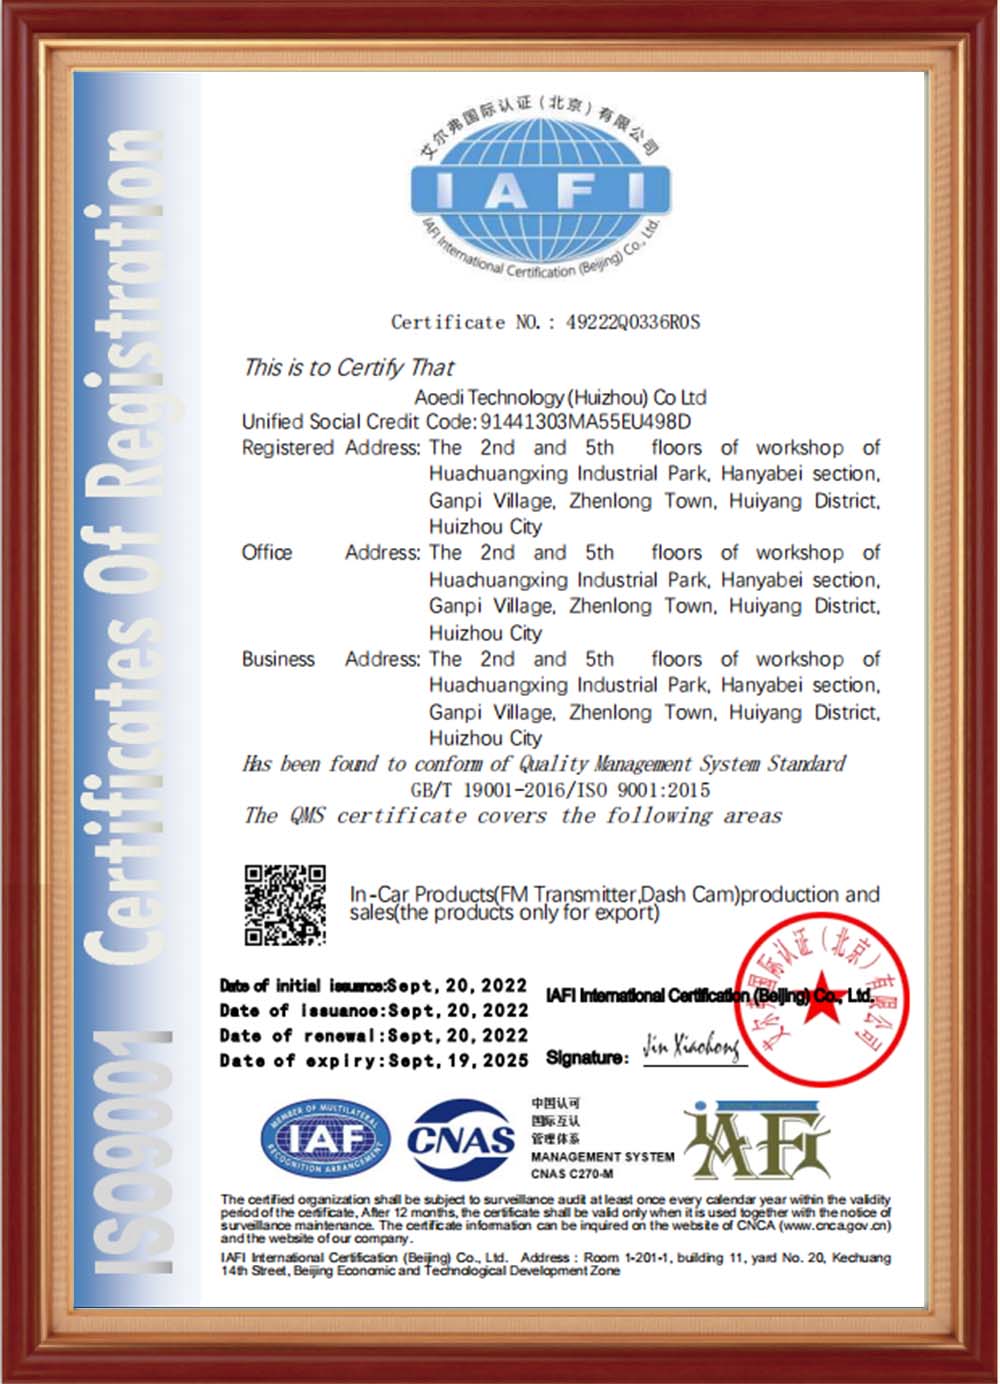 Certificaten-01-1